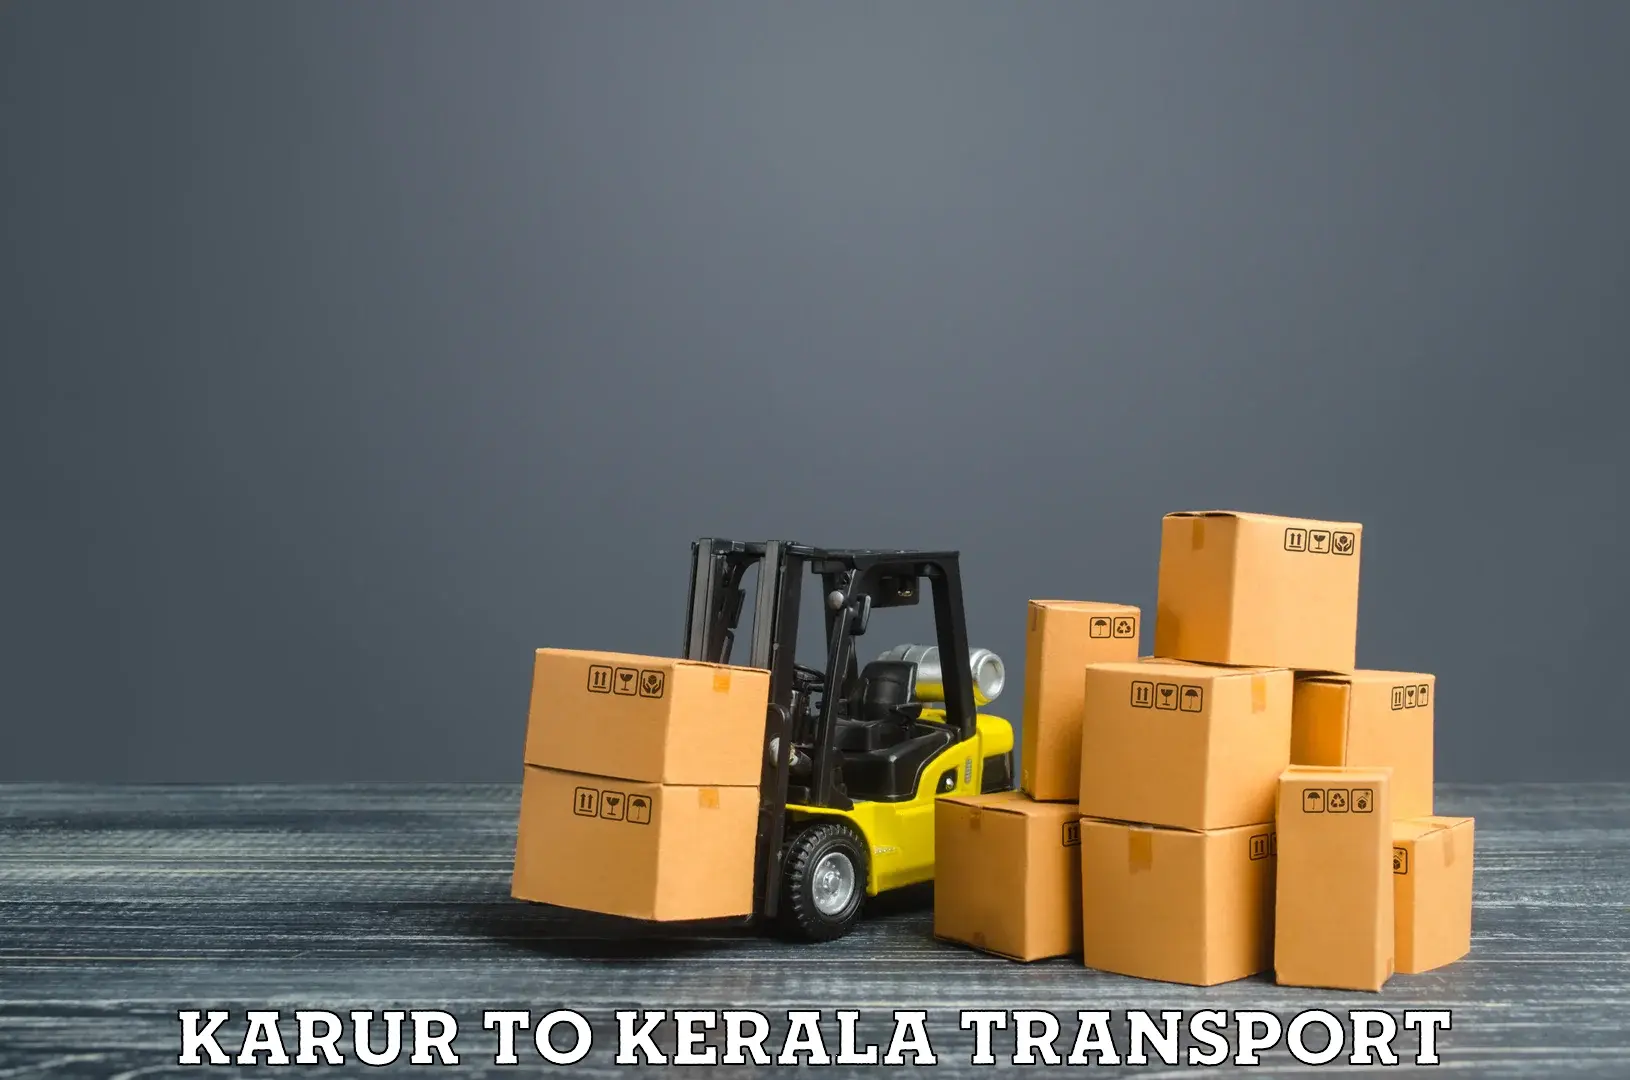 Road transport online services Karur to Kalanjoor